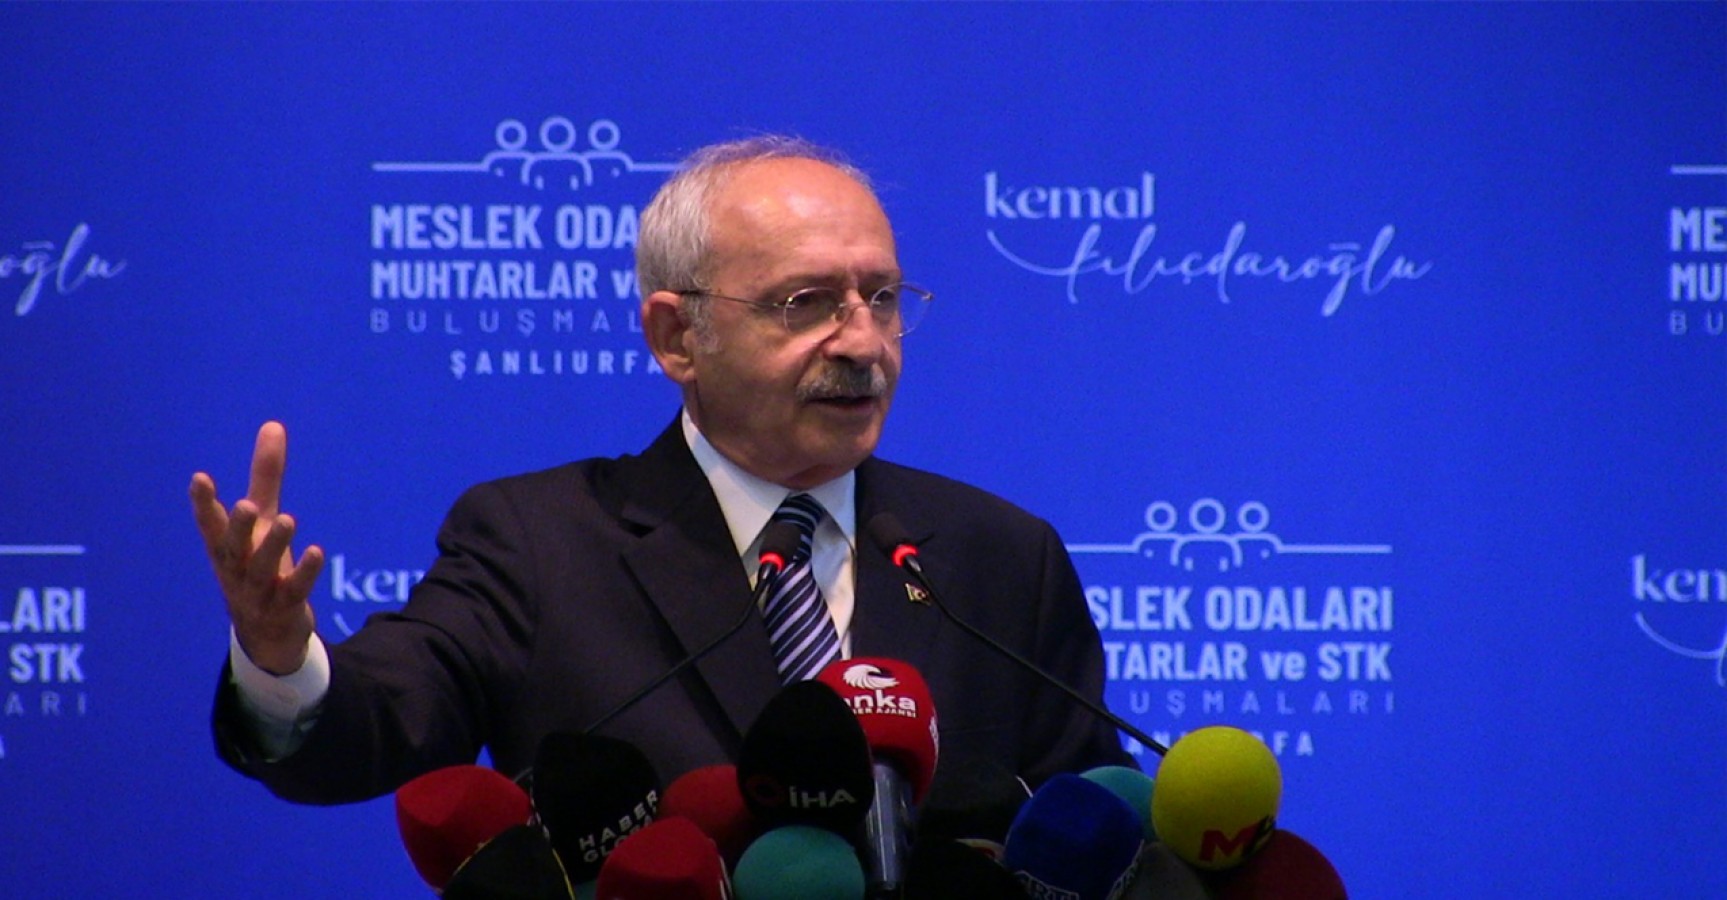 Kılıçdaroğlu’nun Urfa’da verdiği vaadi İzmir’de partisi reddetti;